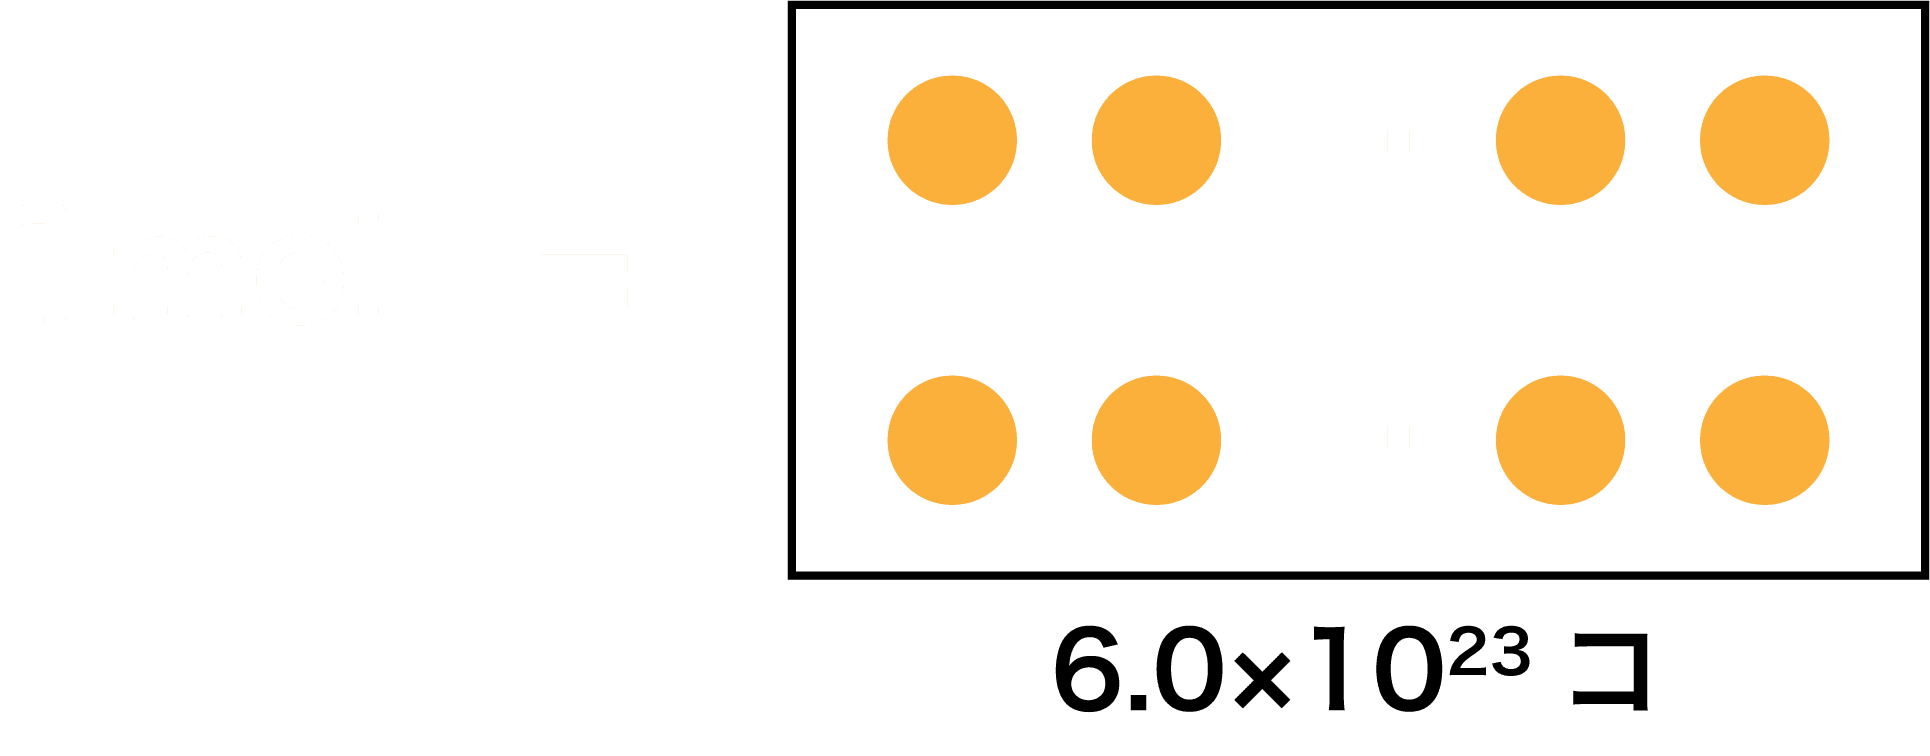 モル計算 単位を駆使 物質量molが絡む問題の解法 原子量 体積 アボガドロ数など 化学のグルメ